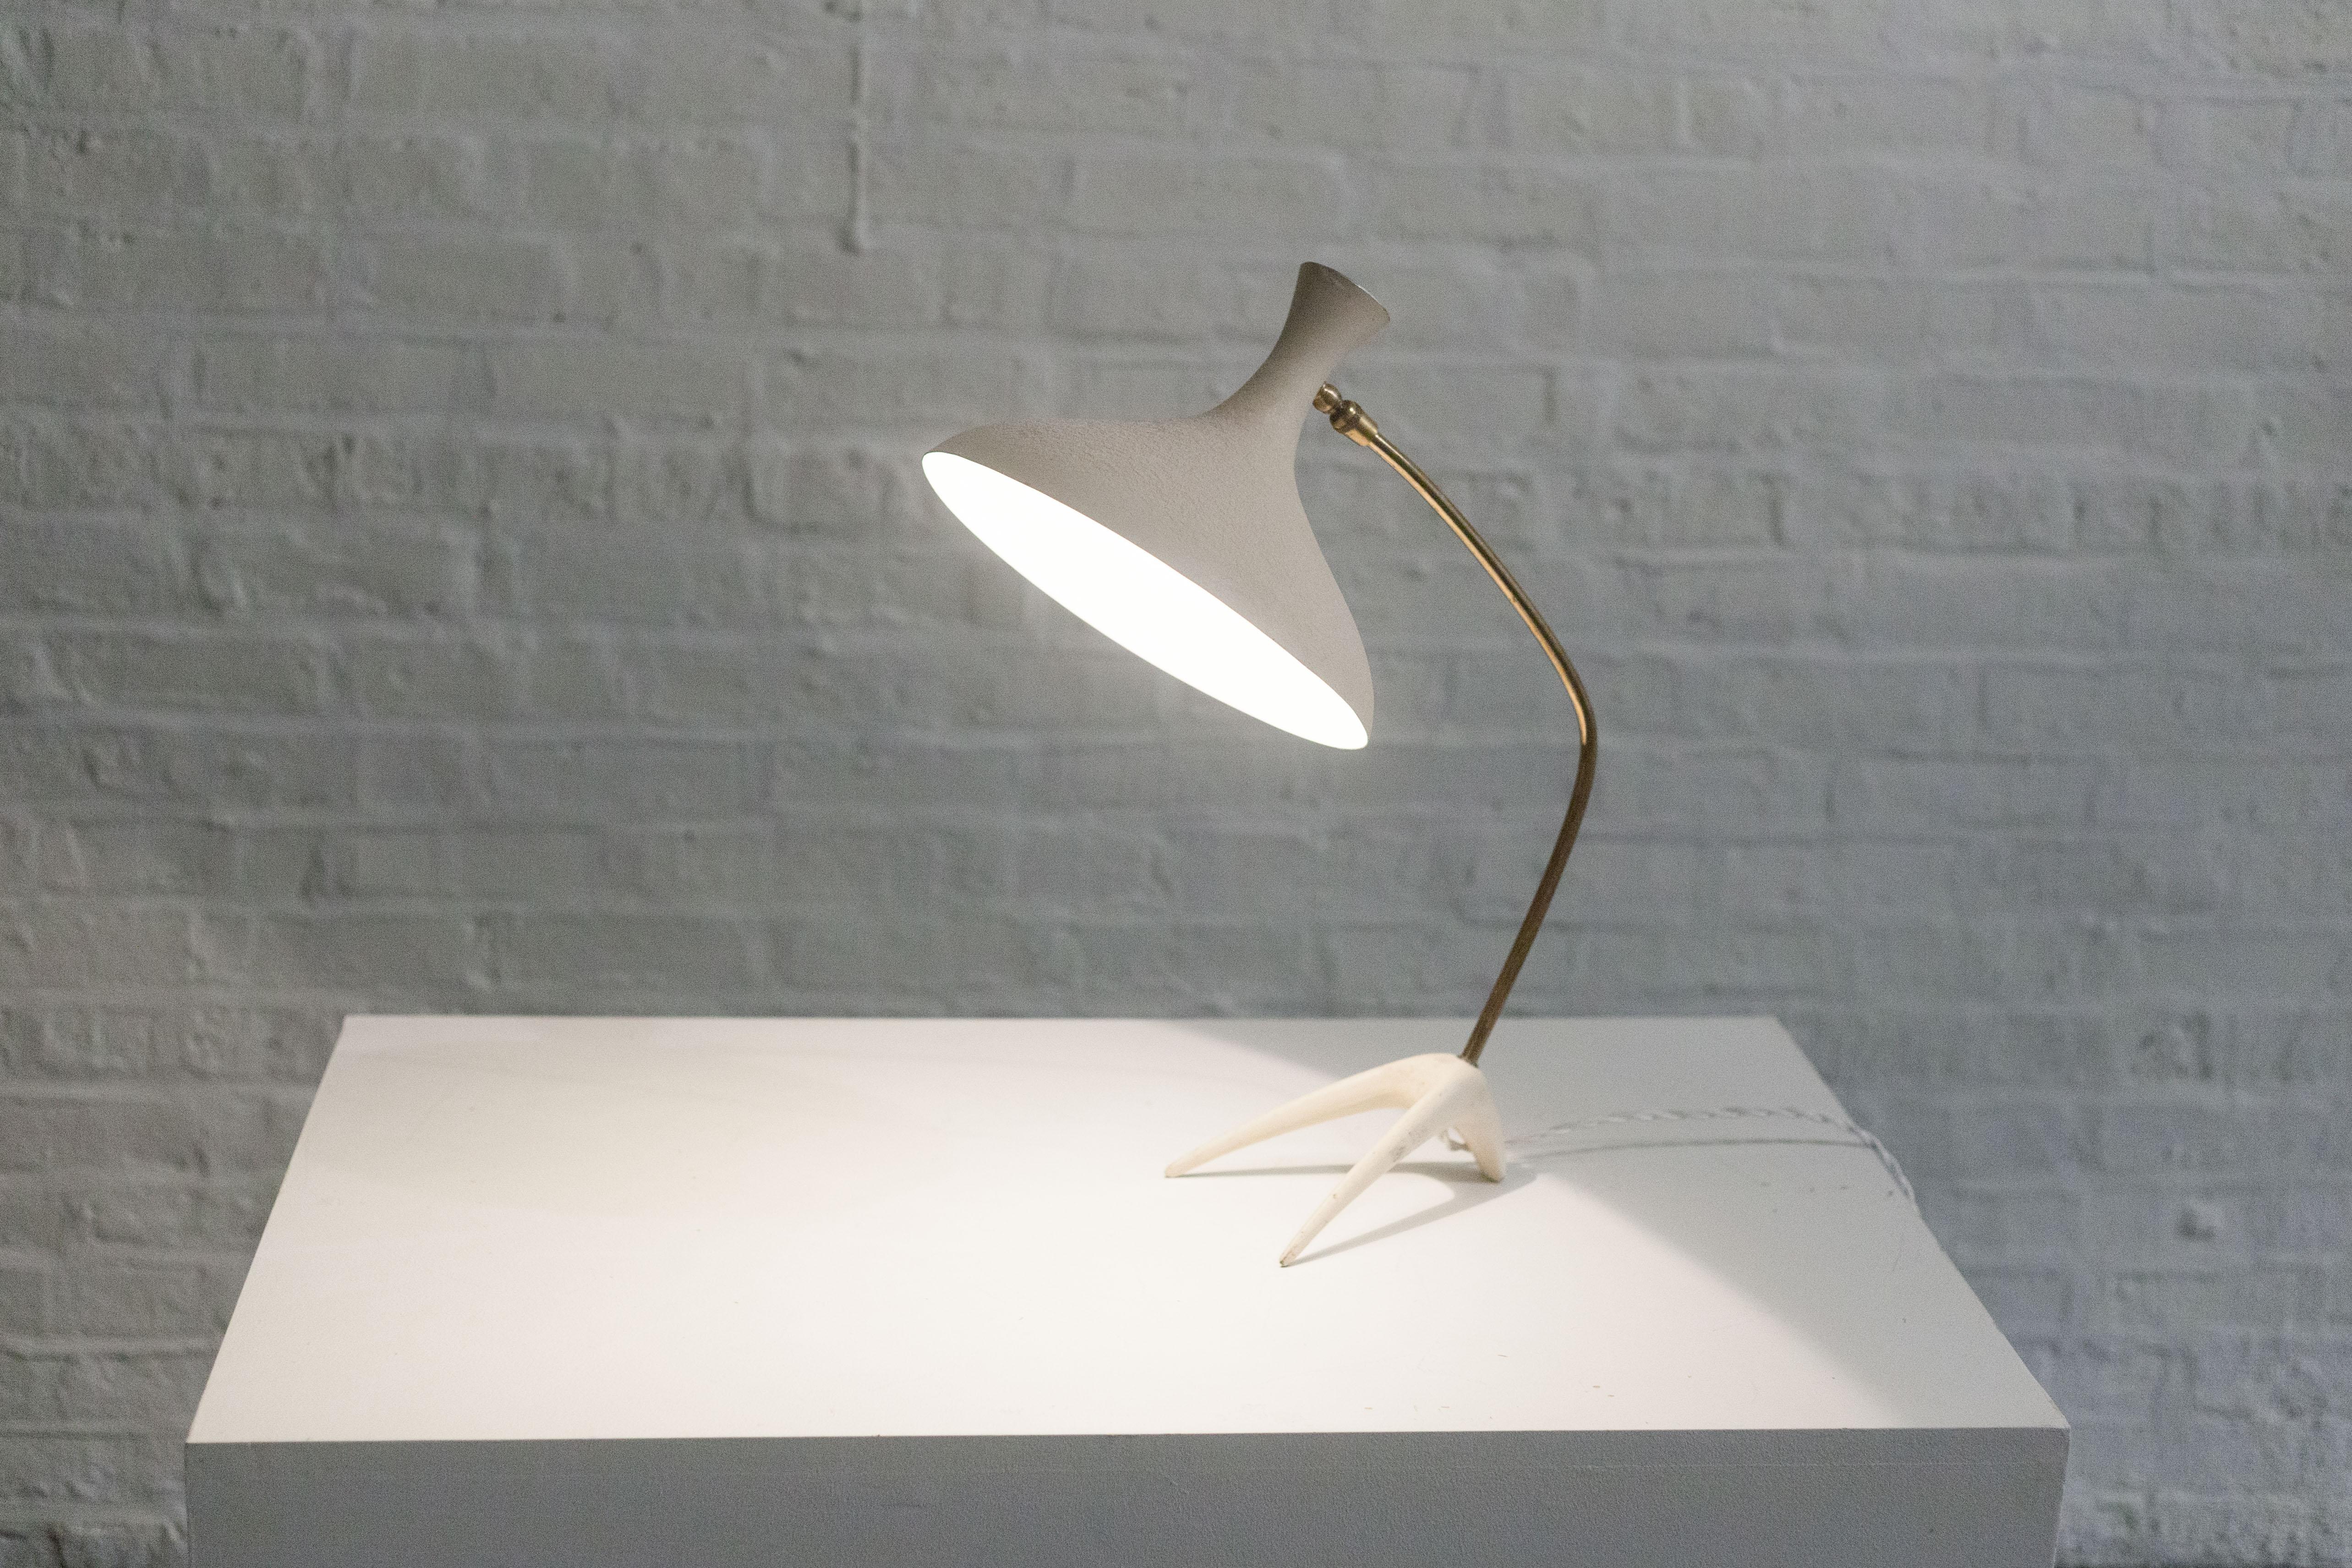 Importée d'Allemagne, une lampe du milieu du siècle dernier des années 1950, longtemps attribuée à Louis Kalff et maintenant connue pour être Cosack Leuchten. 

L'abat-jour en métal blanc, de forme biomorphique et organique, a une forme de